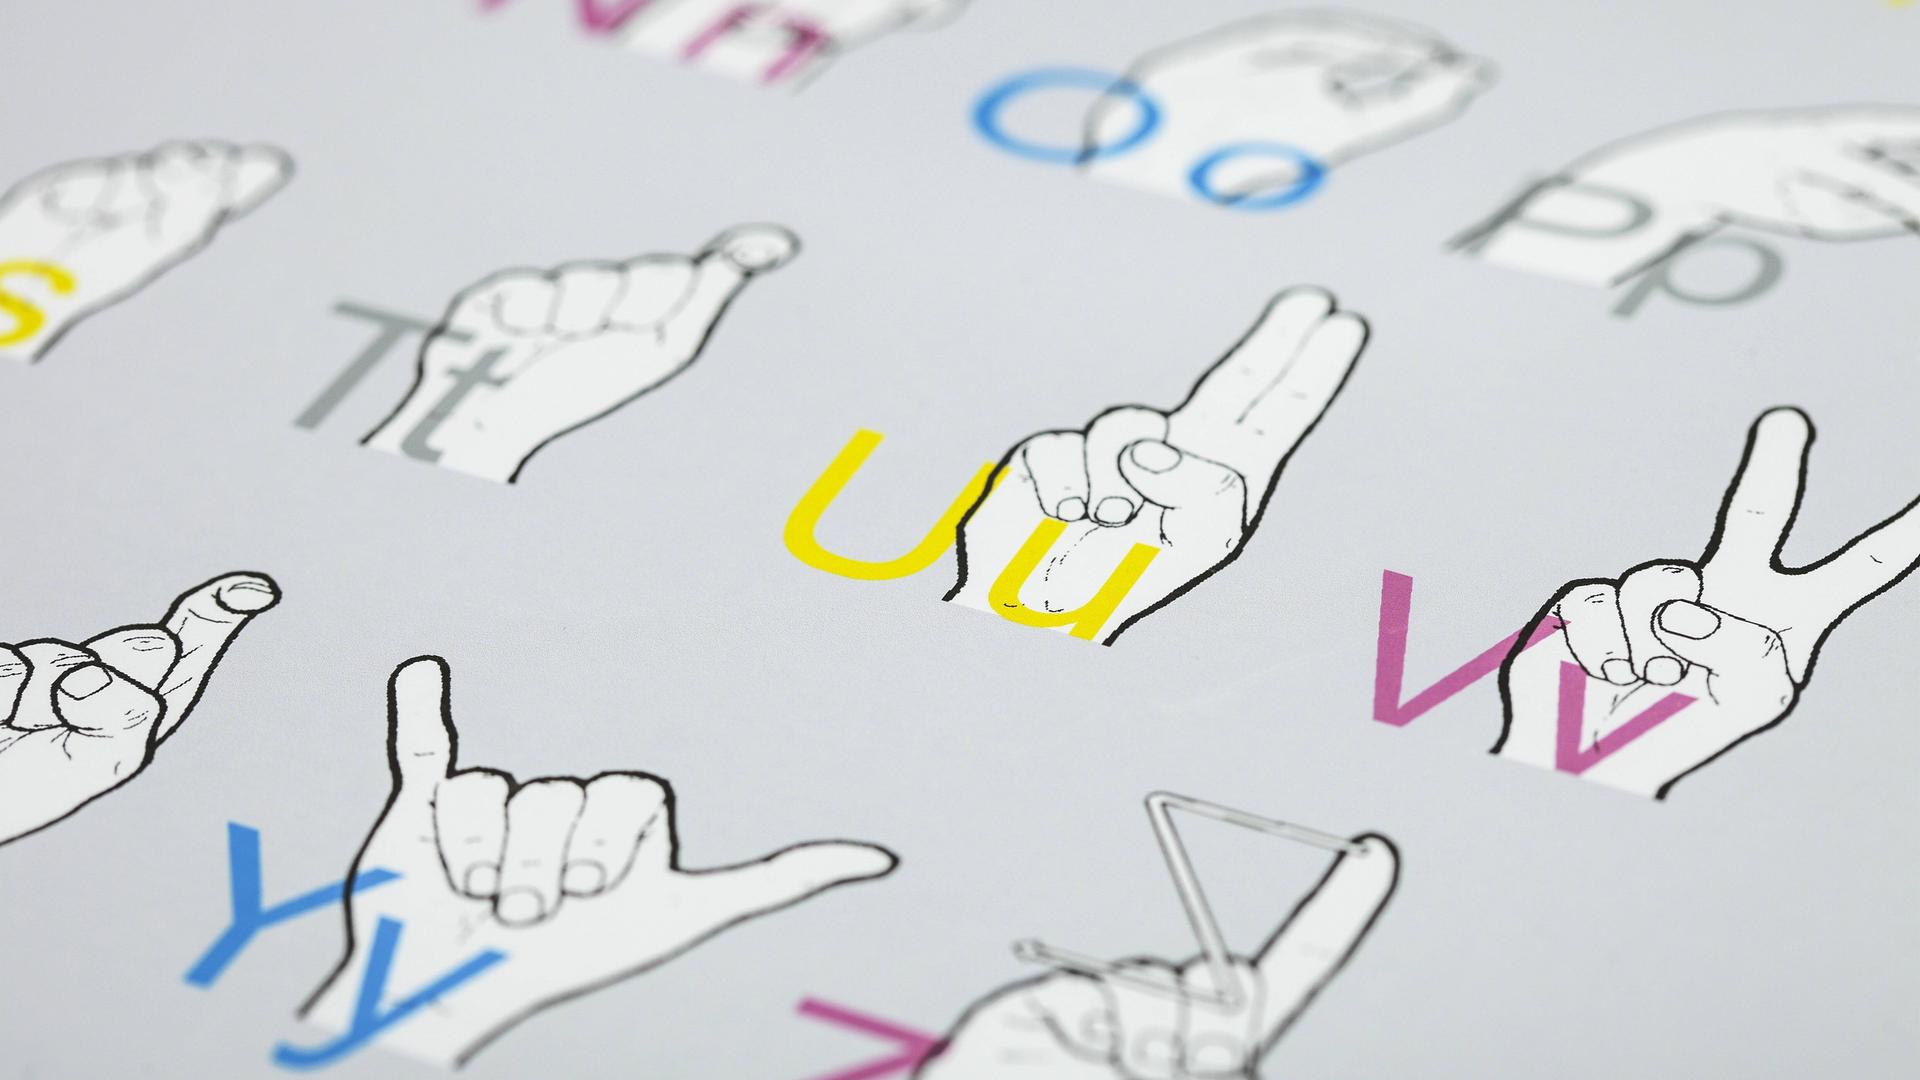 Eine Tafel zum Lernen der Gebärdensprache zeigt bunte Buchstaben und die dazugehörigen Handzeichen.